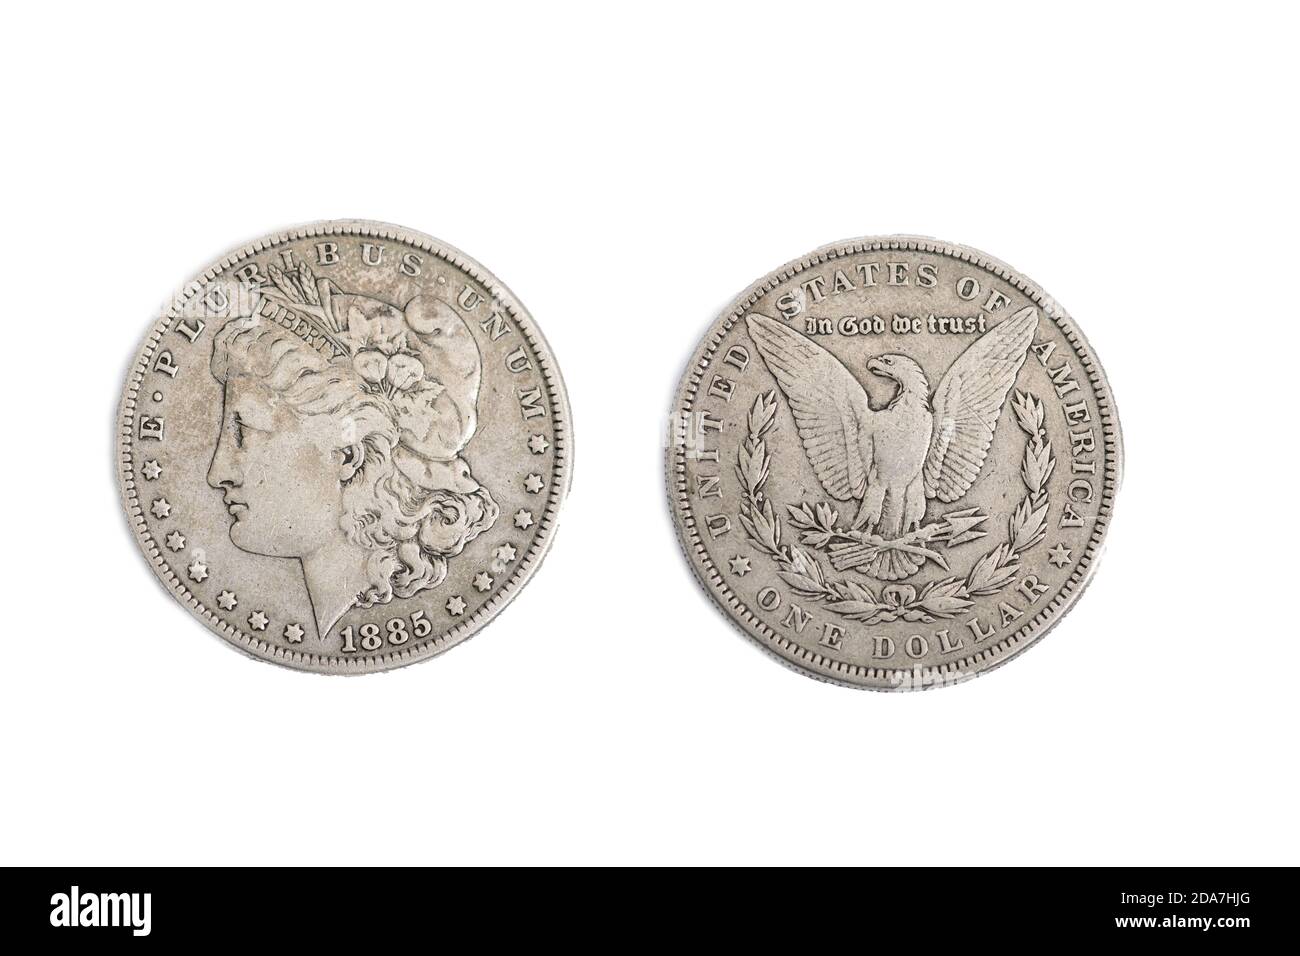 USA US American 1885 Silver Morgan dollar old coin money Stock Photo